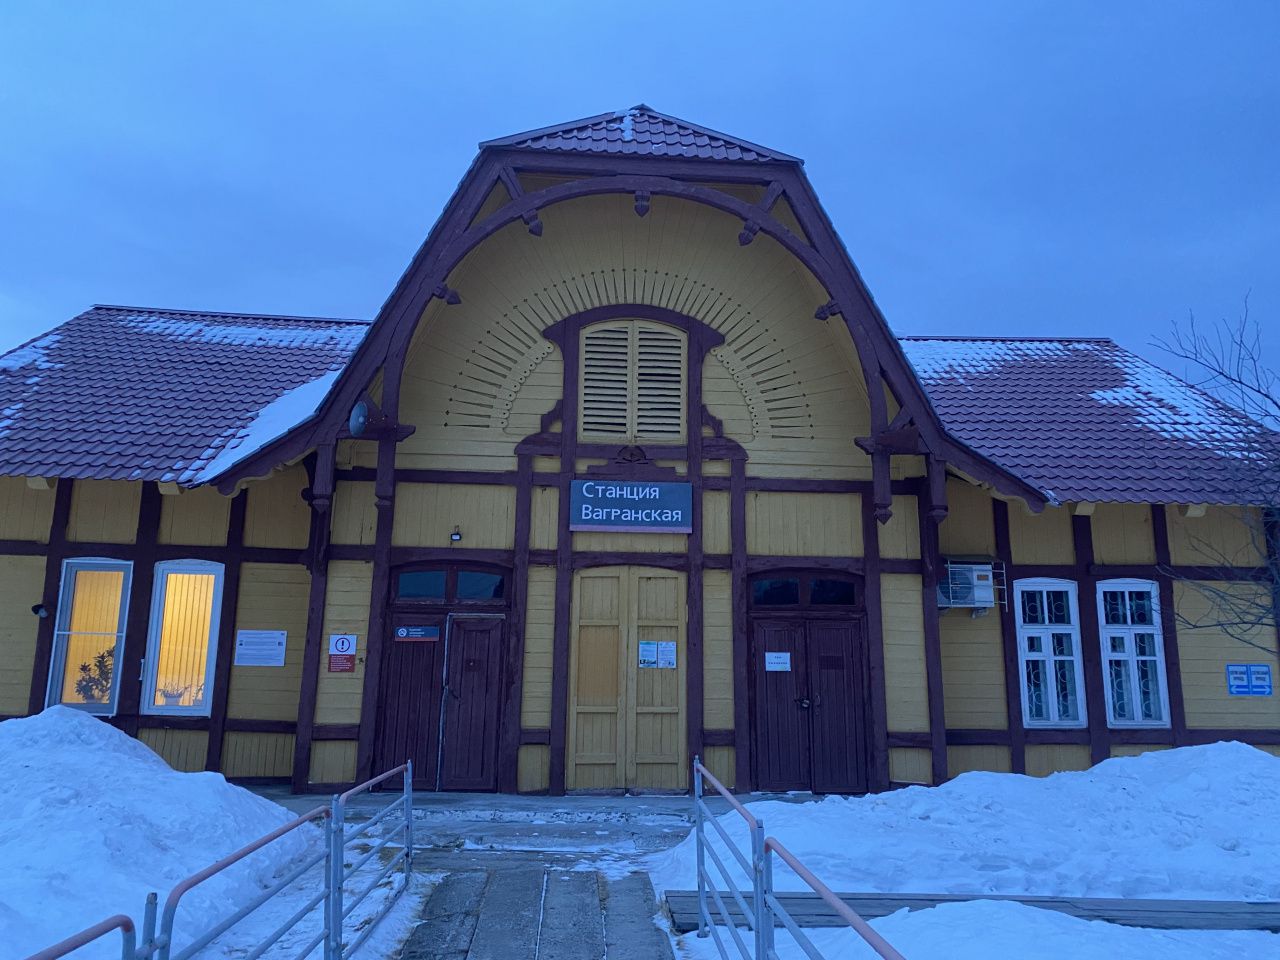 Серовчане создают музей на станции Вагранская